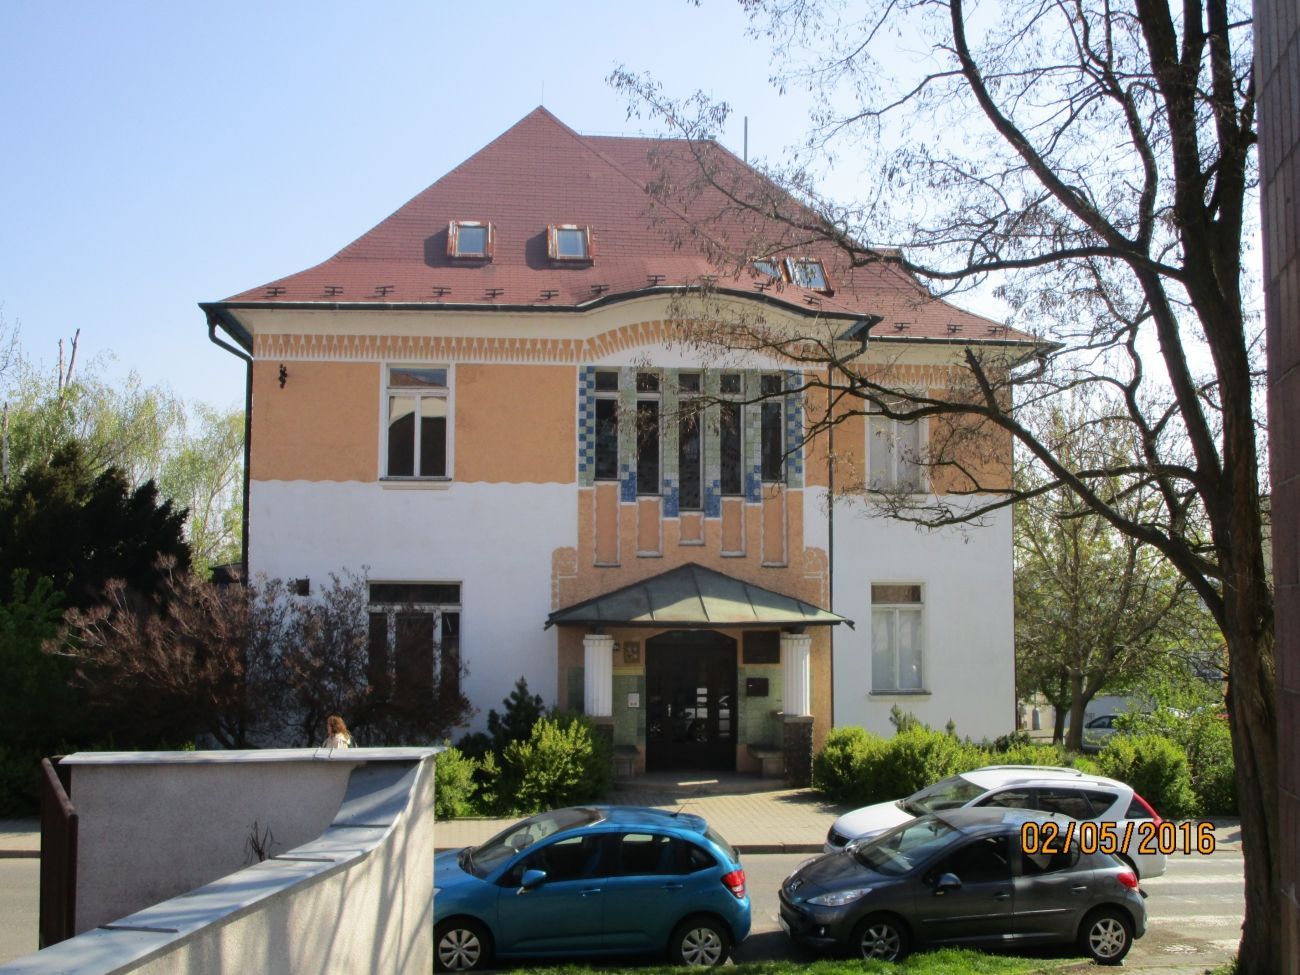 Žilkova vila v Mělníku